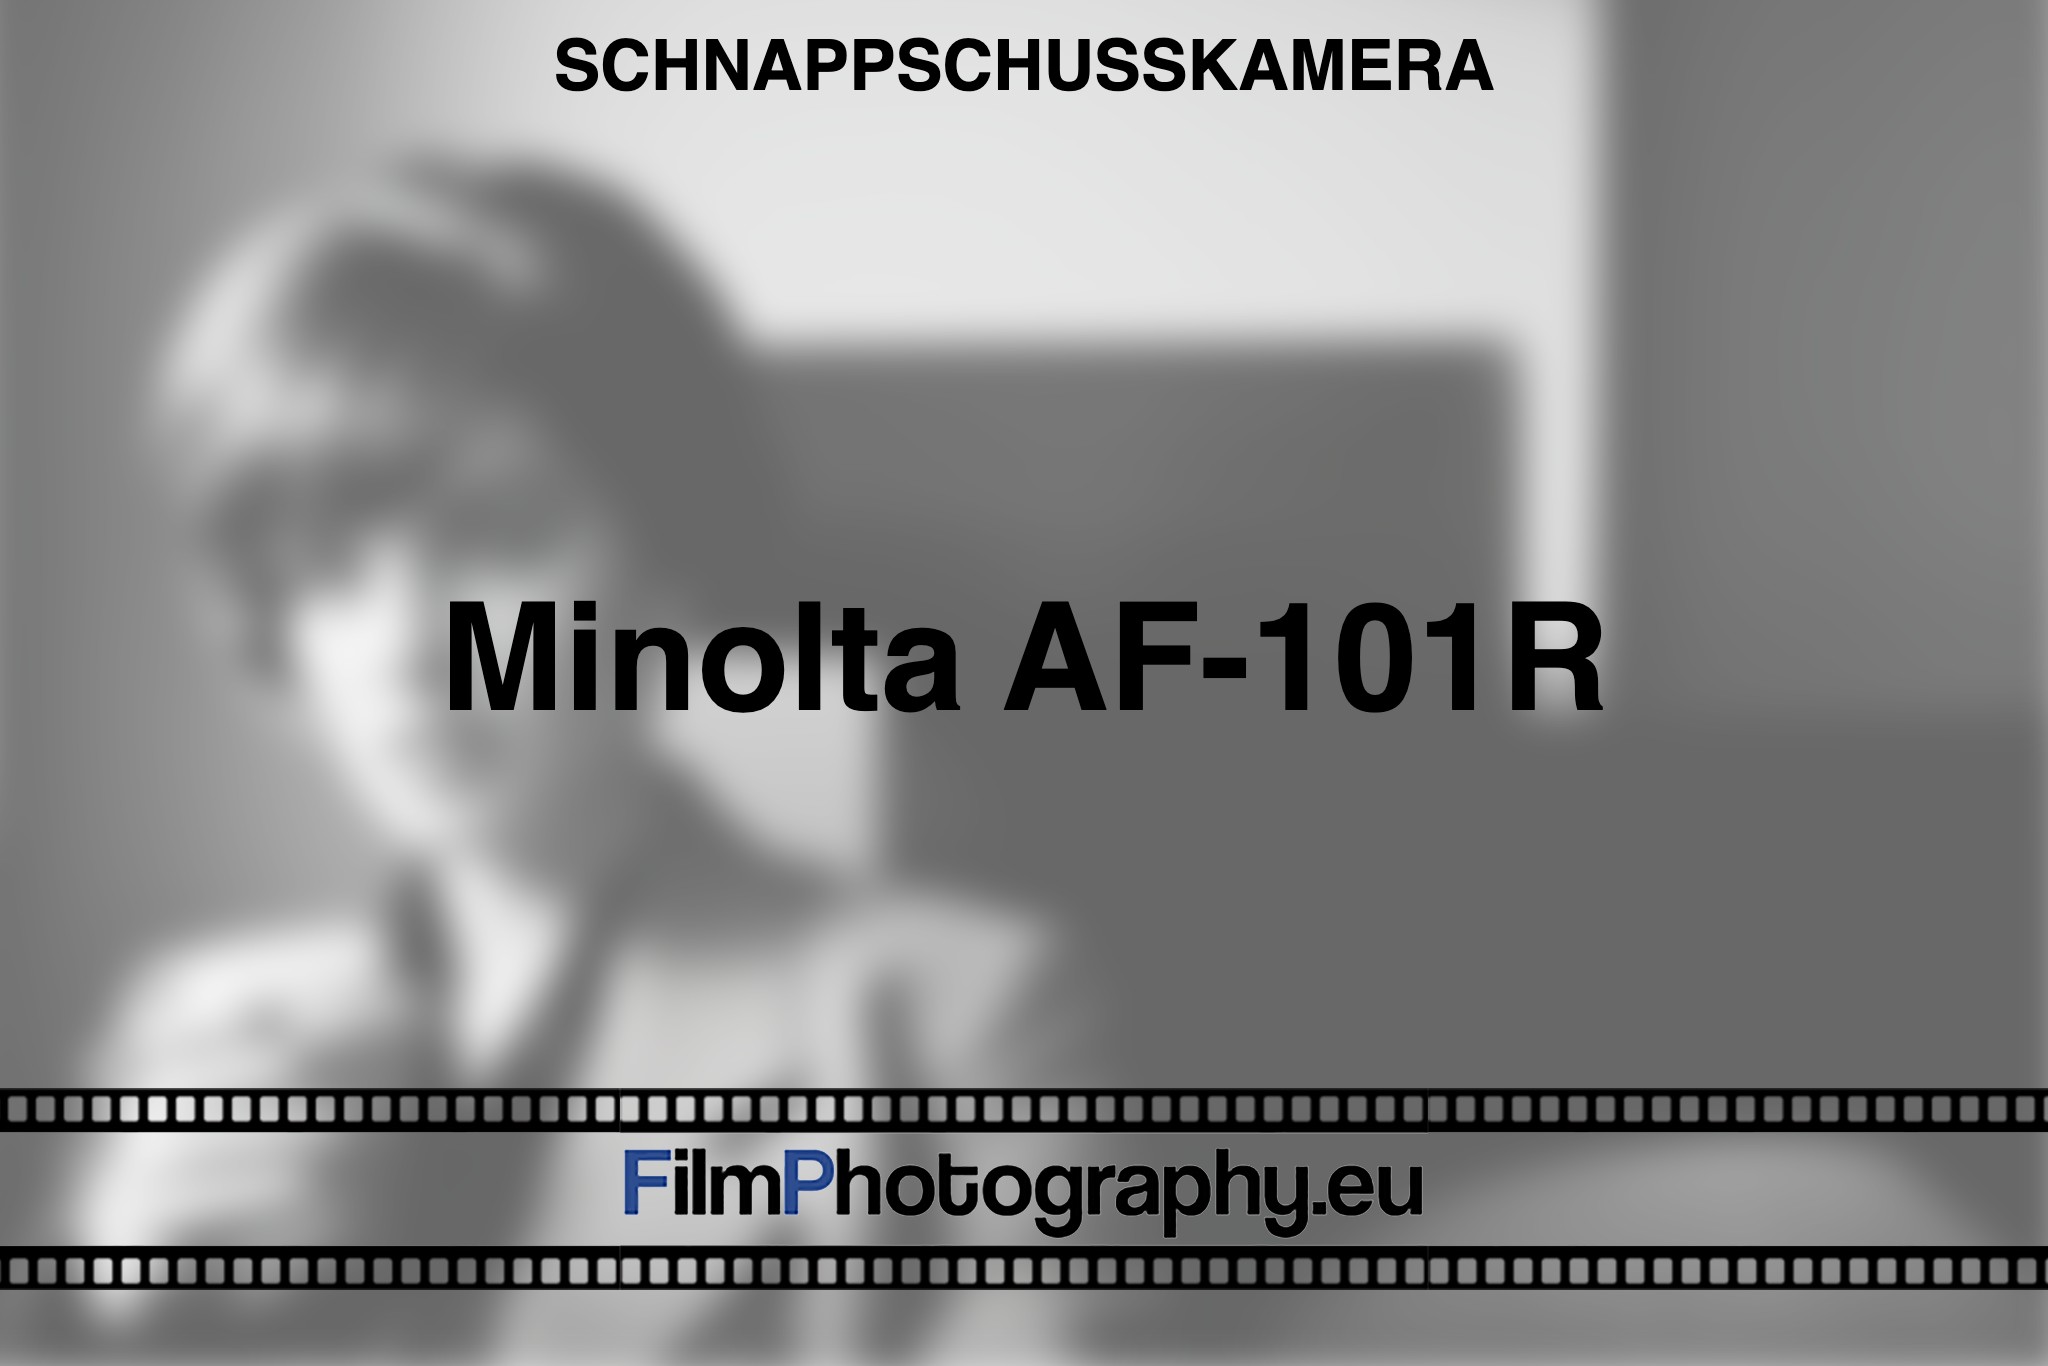 minolta-af-101r-schnappschusskamera-bnv